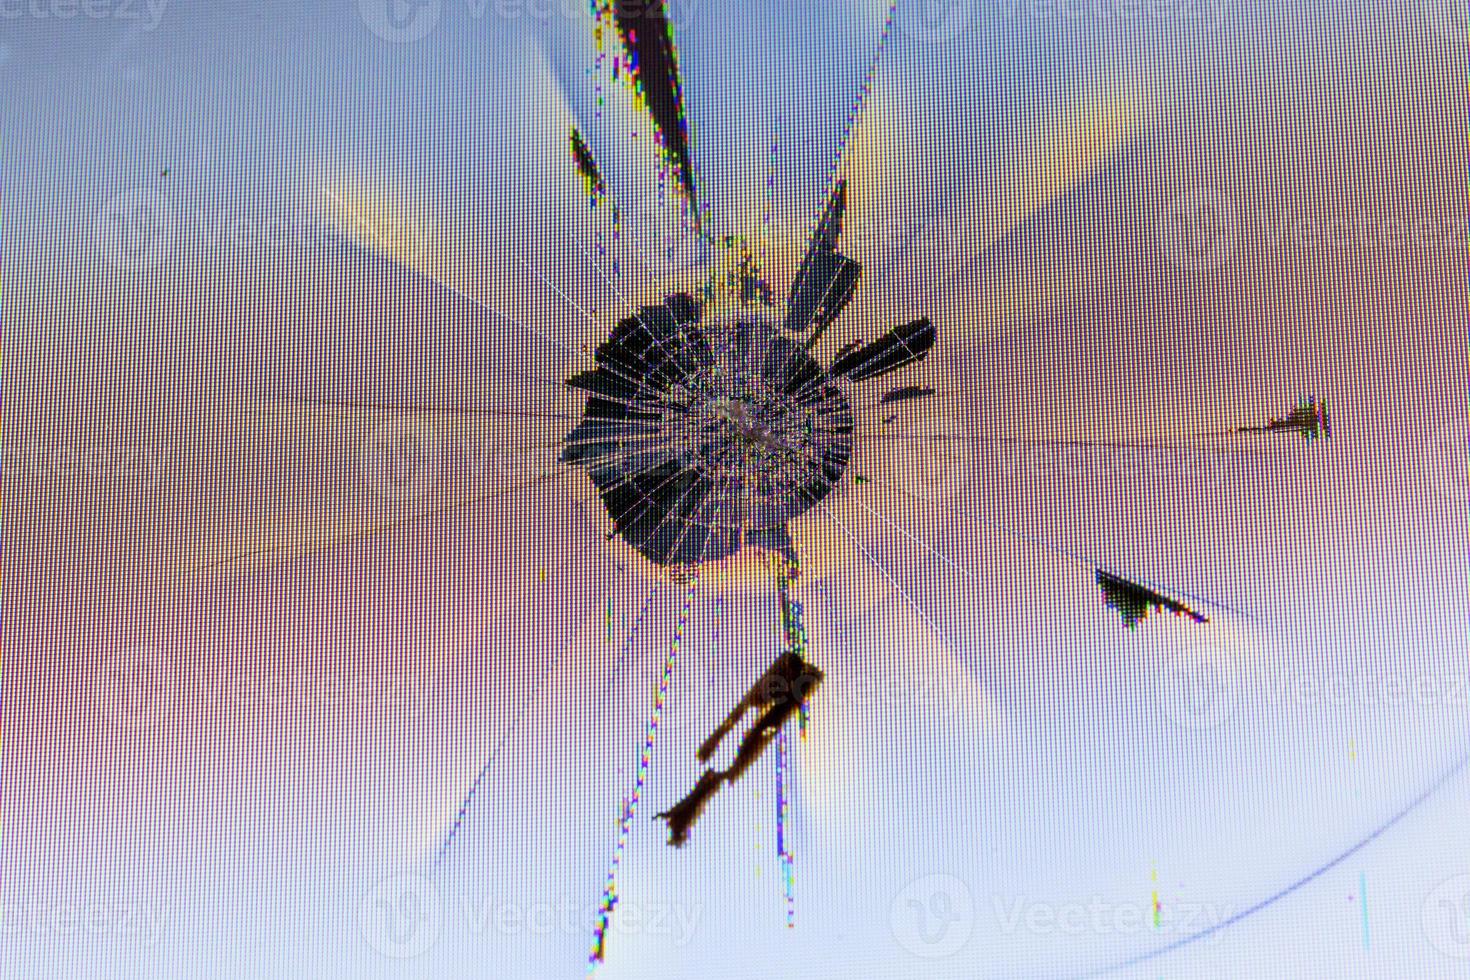 Nahaufnahme einer physisch beschädigten LCD-Bildschirmoberfläche mit Aufprallstelle, radialen Rissen, Pixelgitterlecks und Verfärbungen foto